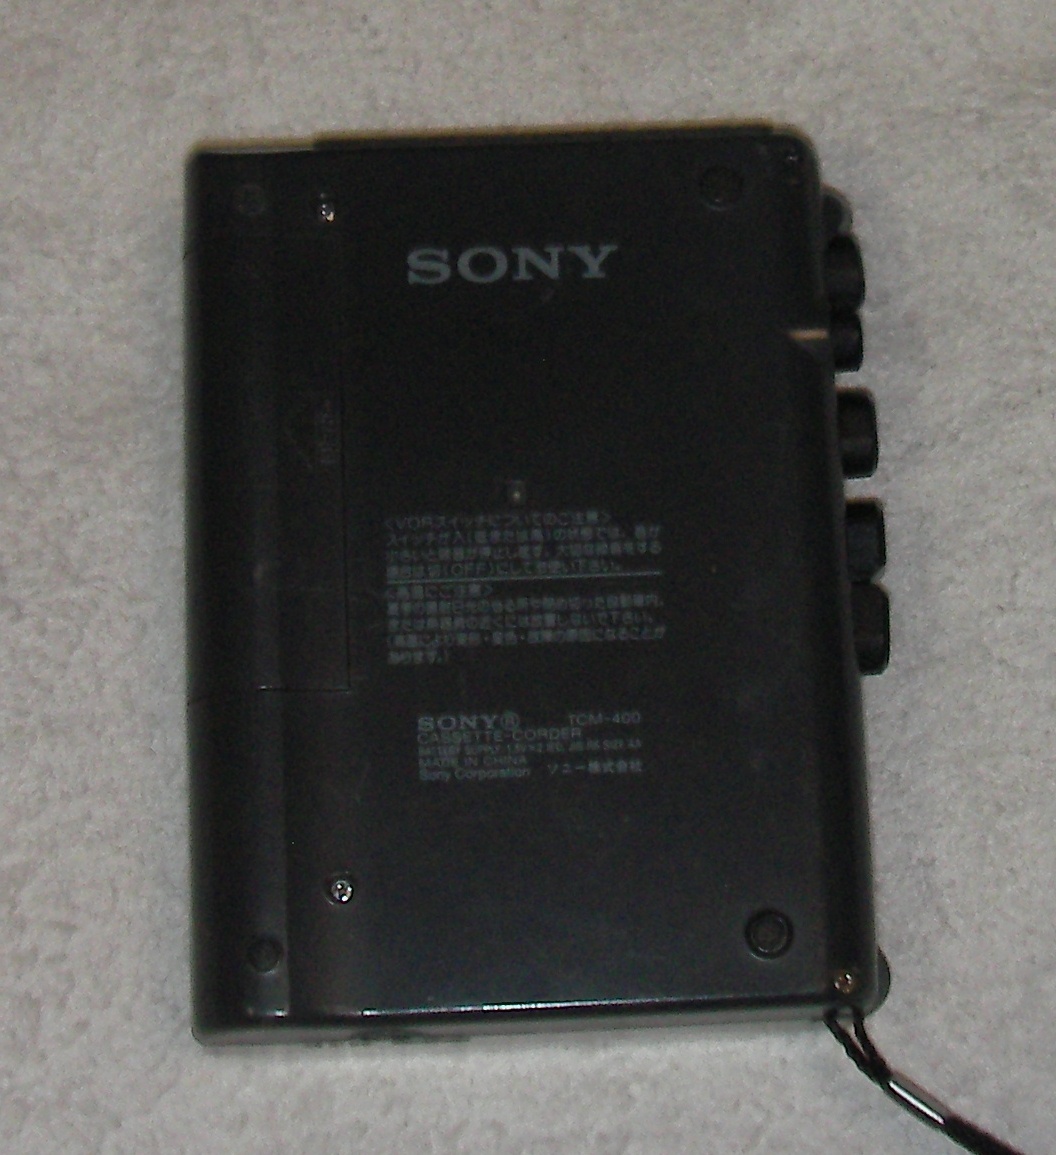 特上：Sony TCM-400 ソニー カセットテープレコーダー、即決おまけ付の画像4